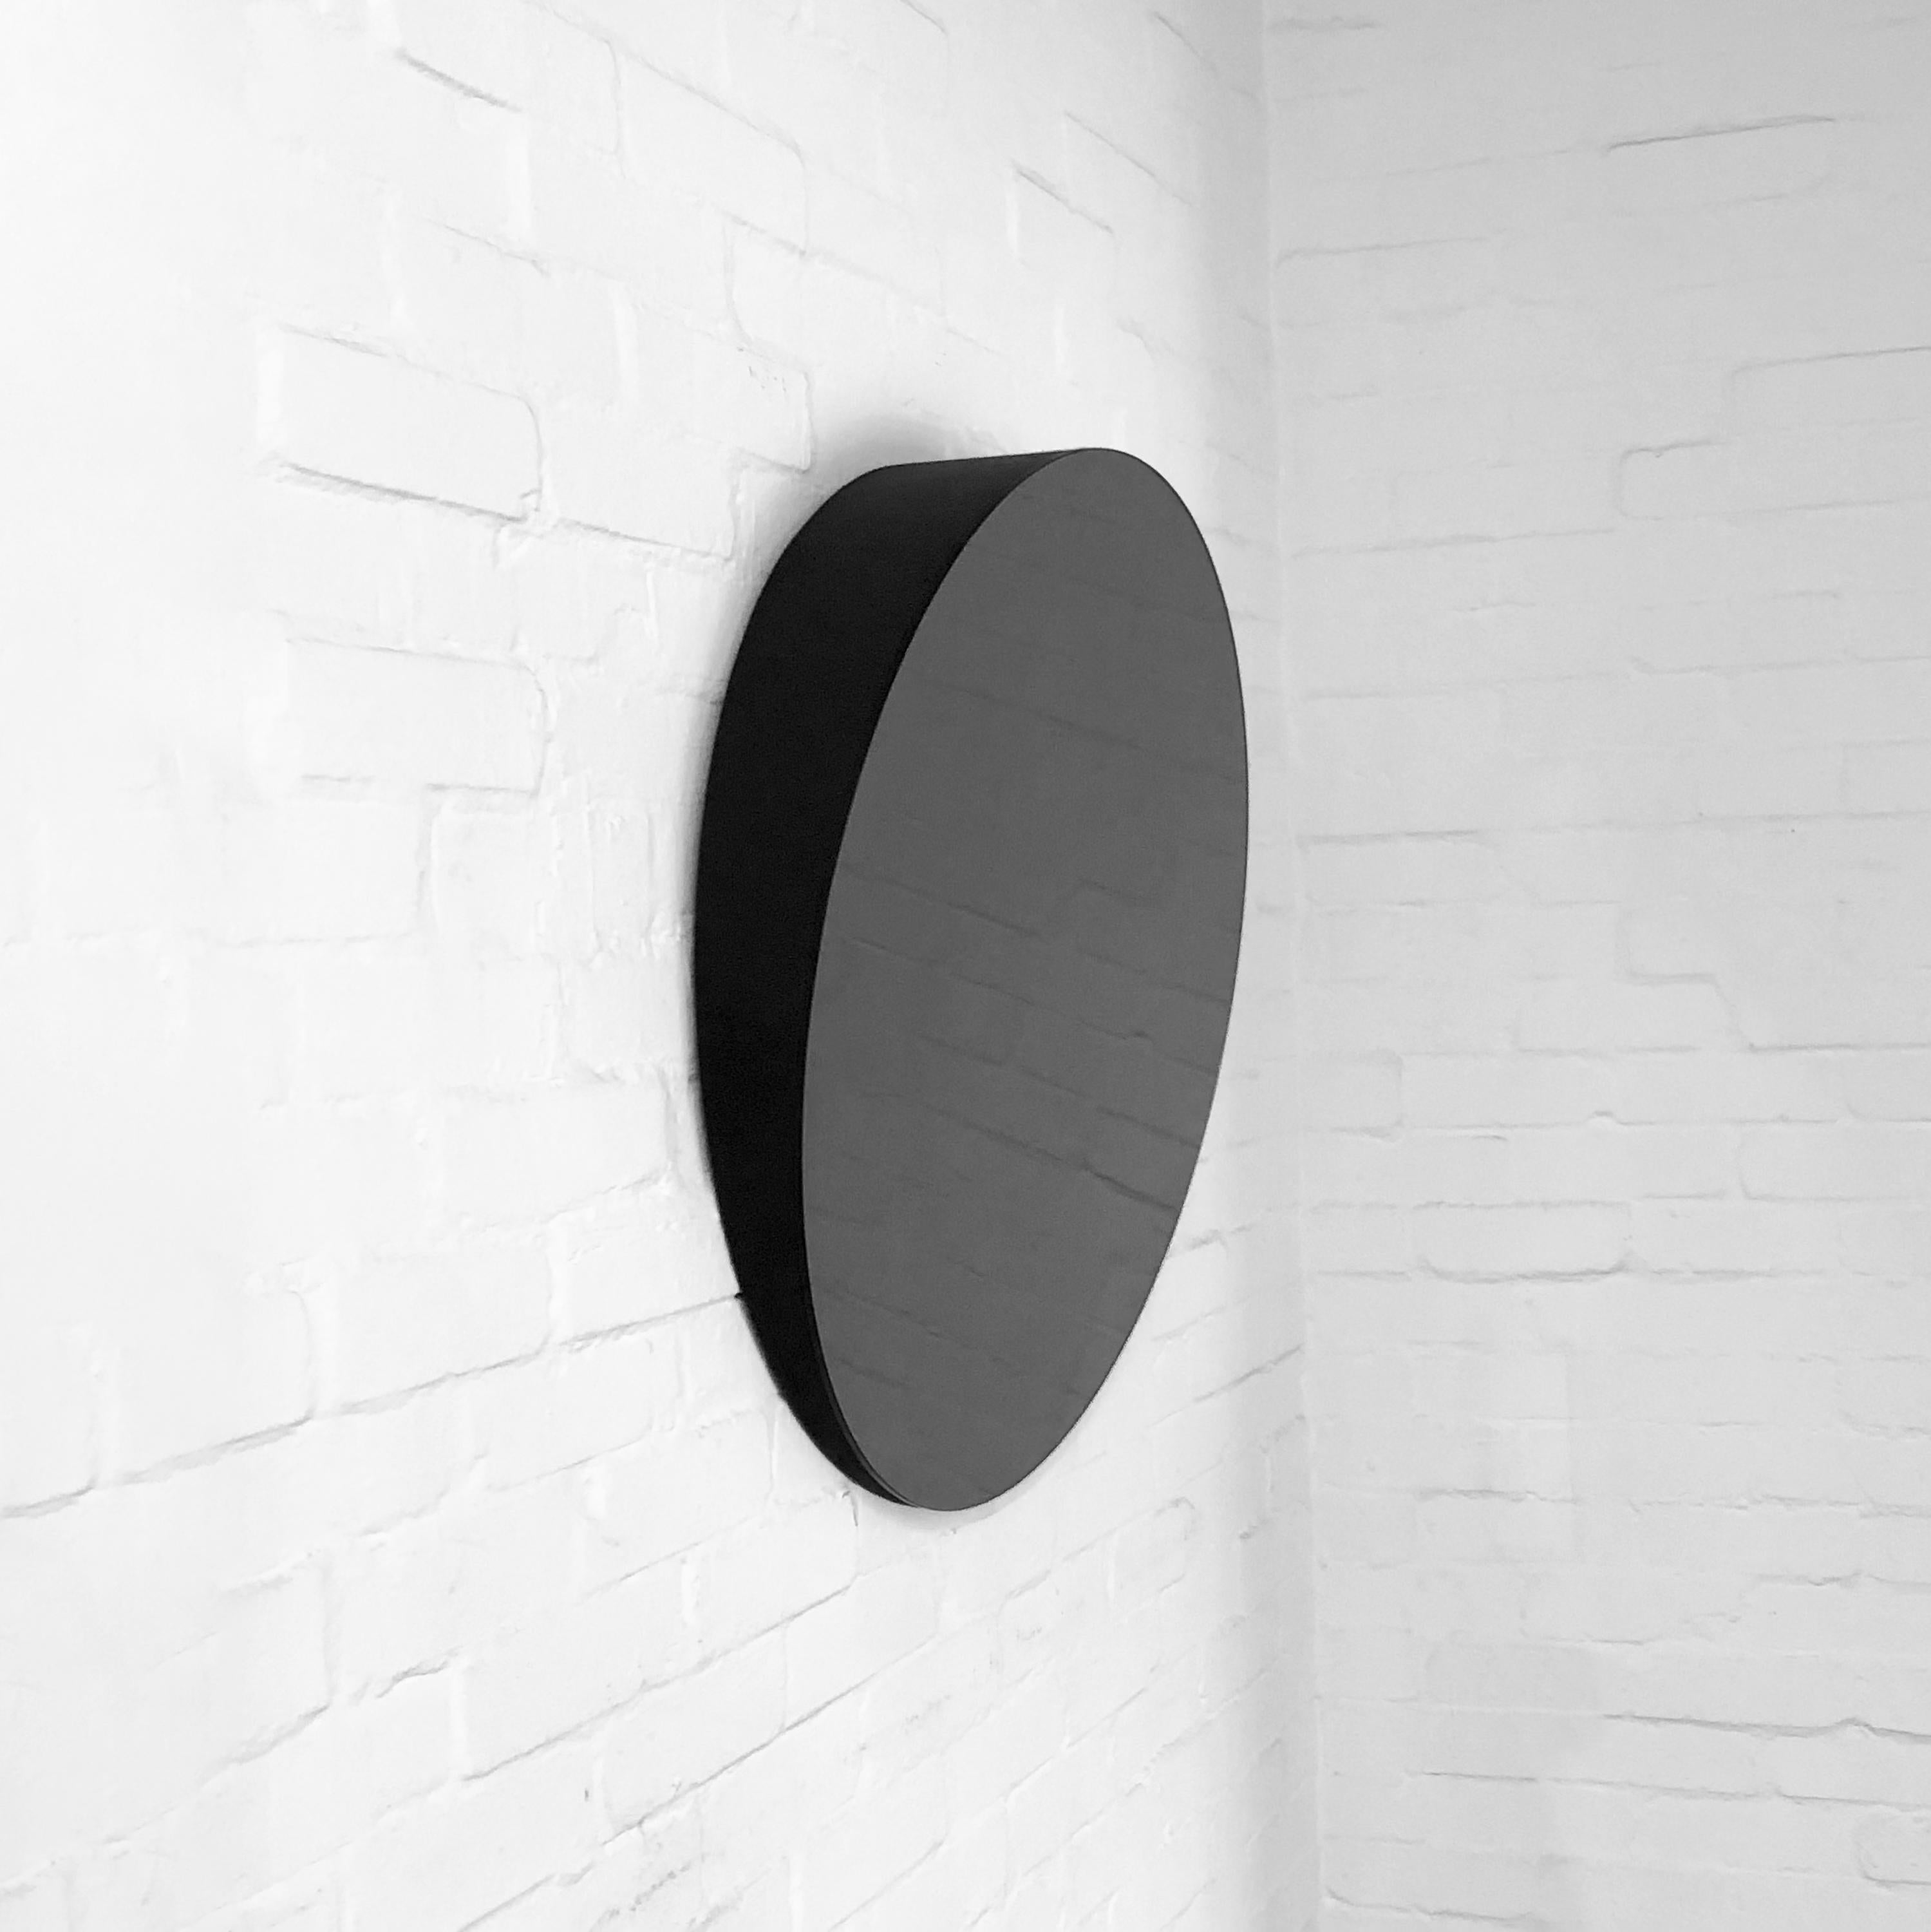 Miroir rond minimaliste teinté noir, sans cadre, incliné à 10 degrés. Conçu et fabriqué à Londres, au Royaume-Uni.

Fabrice est fabriqué avec un support en MDF peint et un système de tasseaux français incorporé (lattes fendues) afin que le miroir